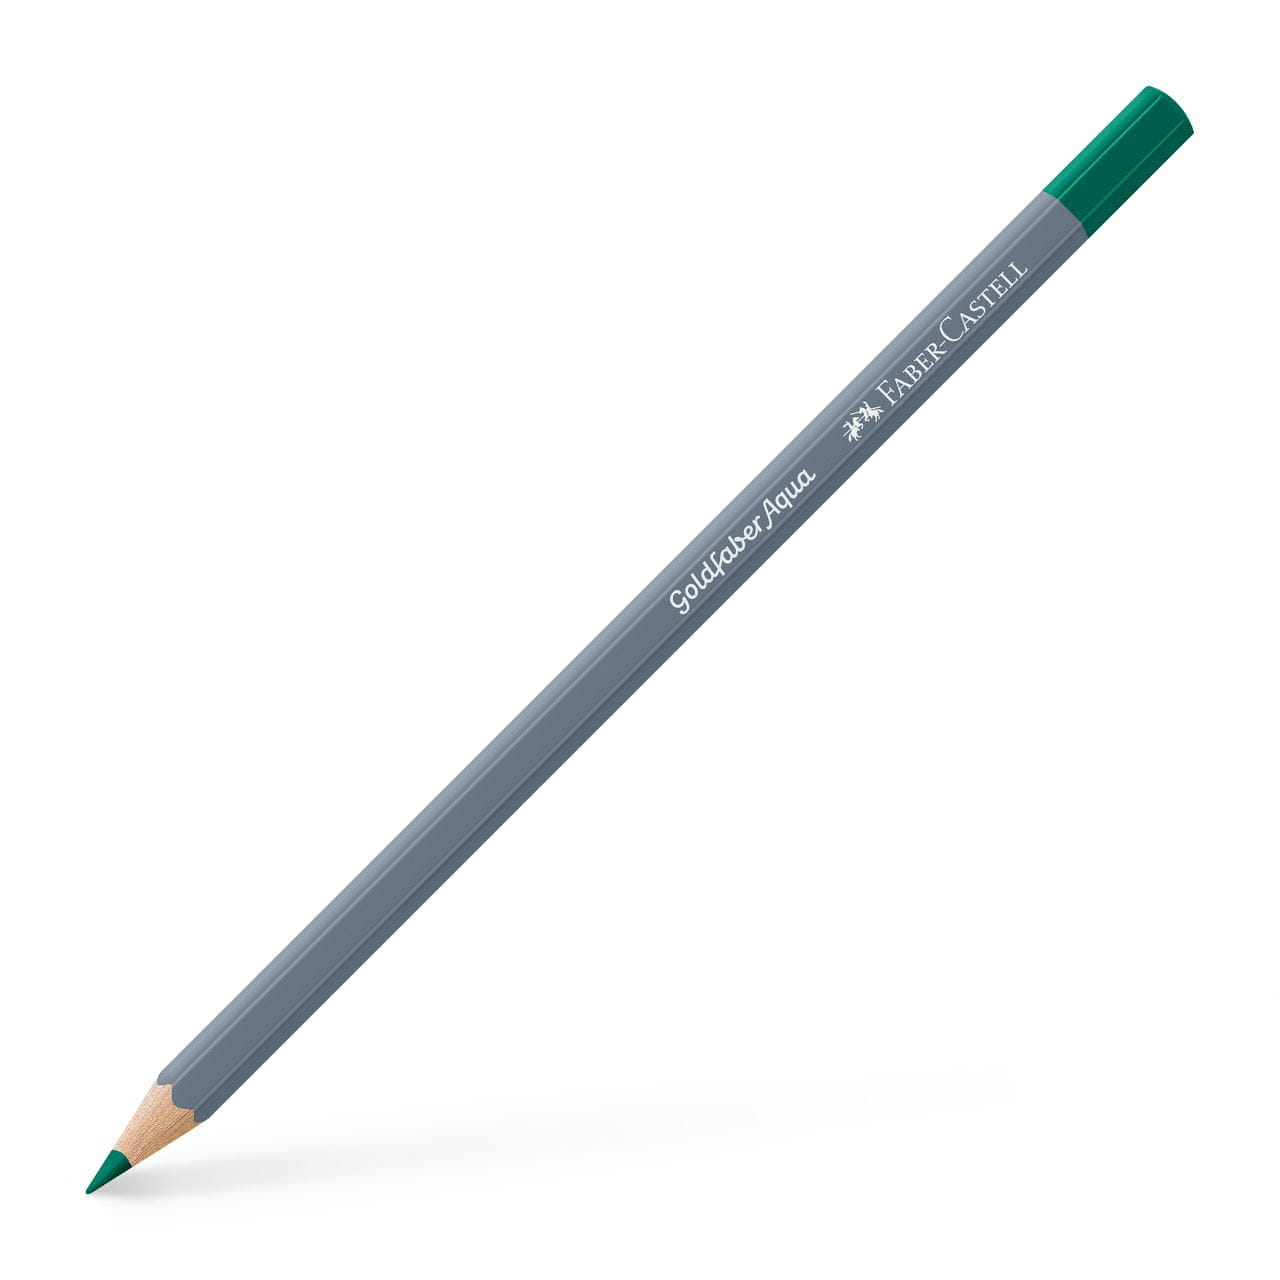 Faber-Castell - Crayon Goldfaber Aqua vert émeraude